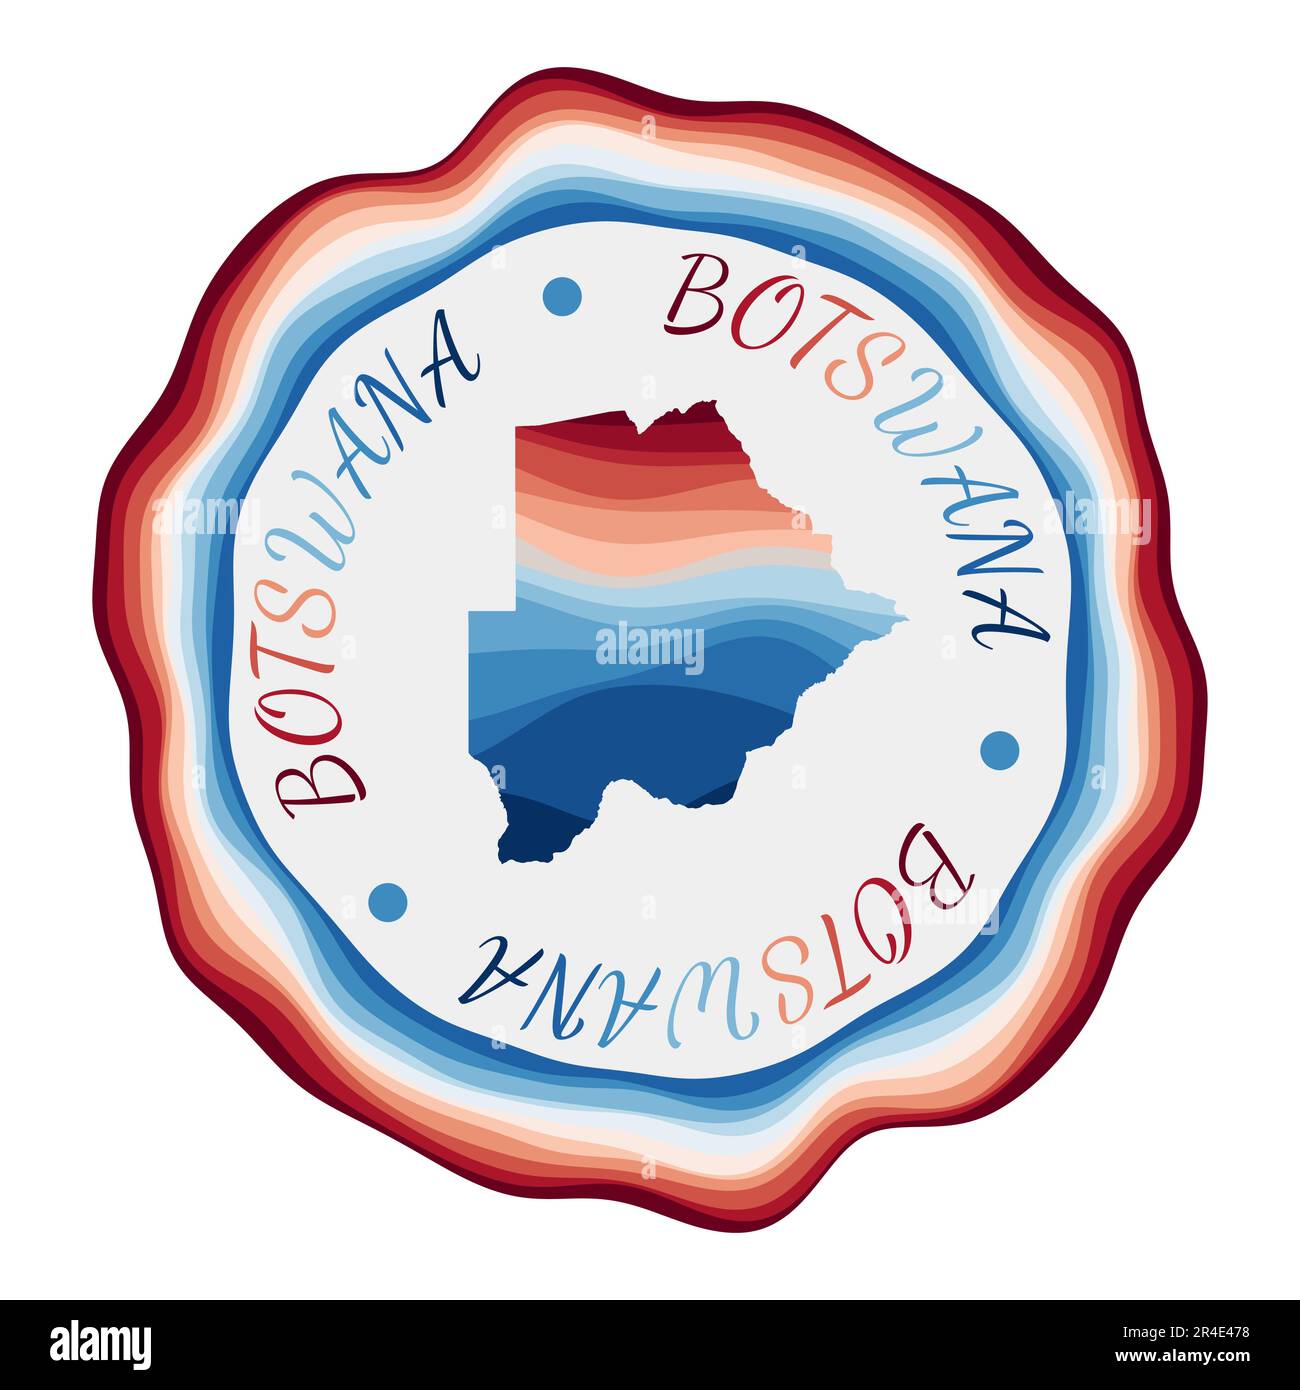 Botsuana-Abzeichen. Landkarte mit wunderschönen geometrischen Wellen und leuchtend rotem blauem Rahmen. Leuchtendes rundes Logo von Botsuana. Vektordarstellung. Stock Vektor